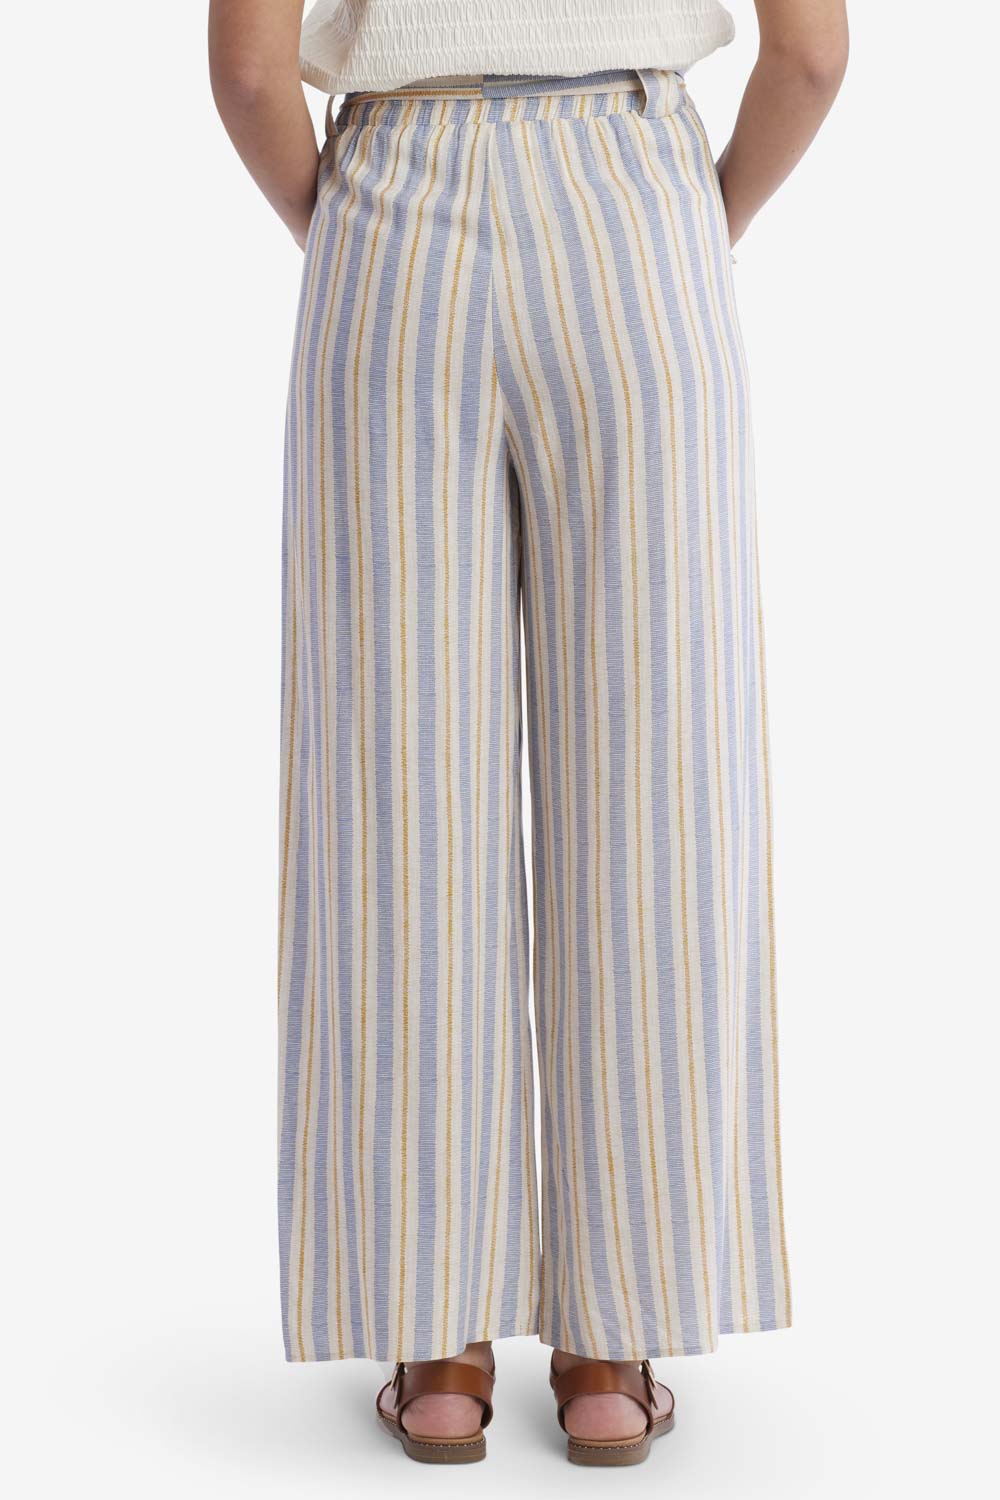 Keaton Paper Bag Striped Pants